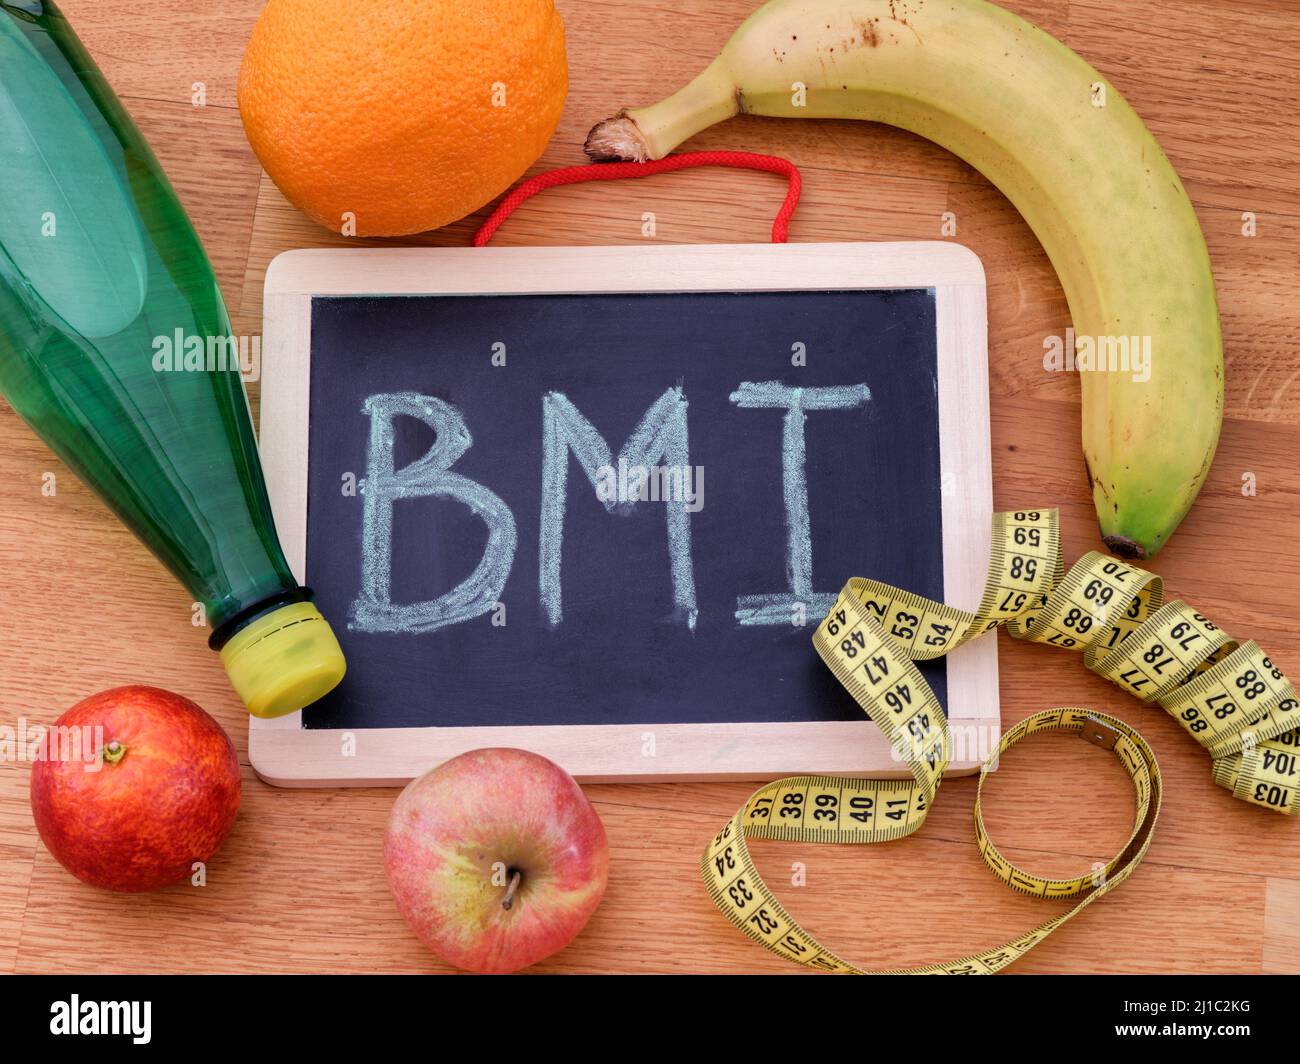 La abreviatura IMC (índice de masa corporal) en una pizarra y algunas frutas, una botella de agua y cinta métrica alrededor de ella. Primer plano. Foto de stock